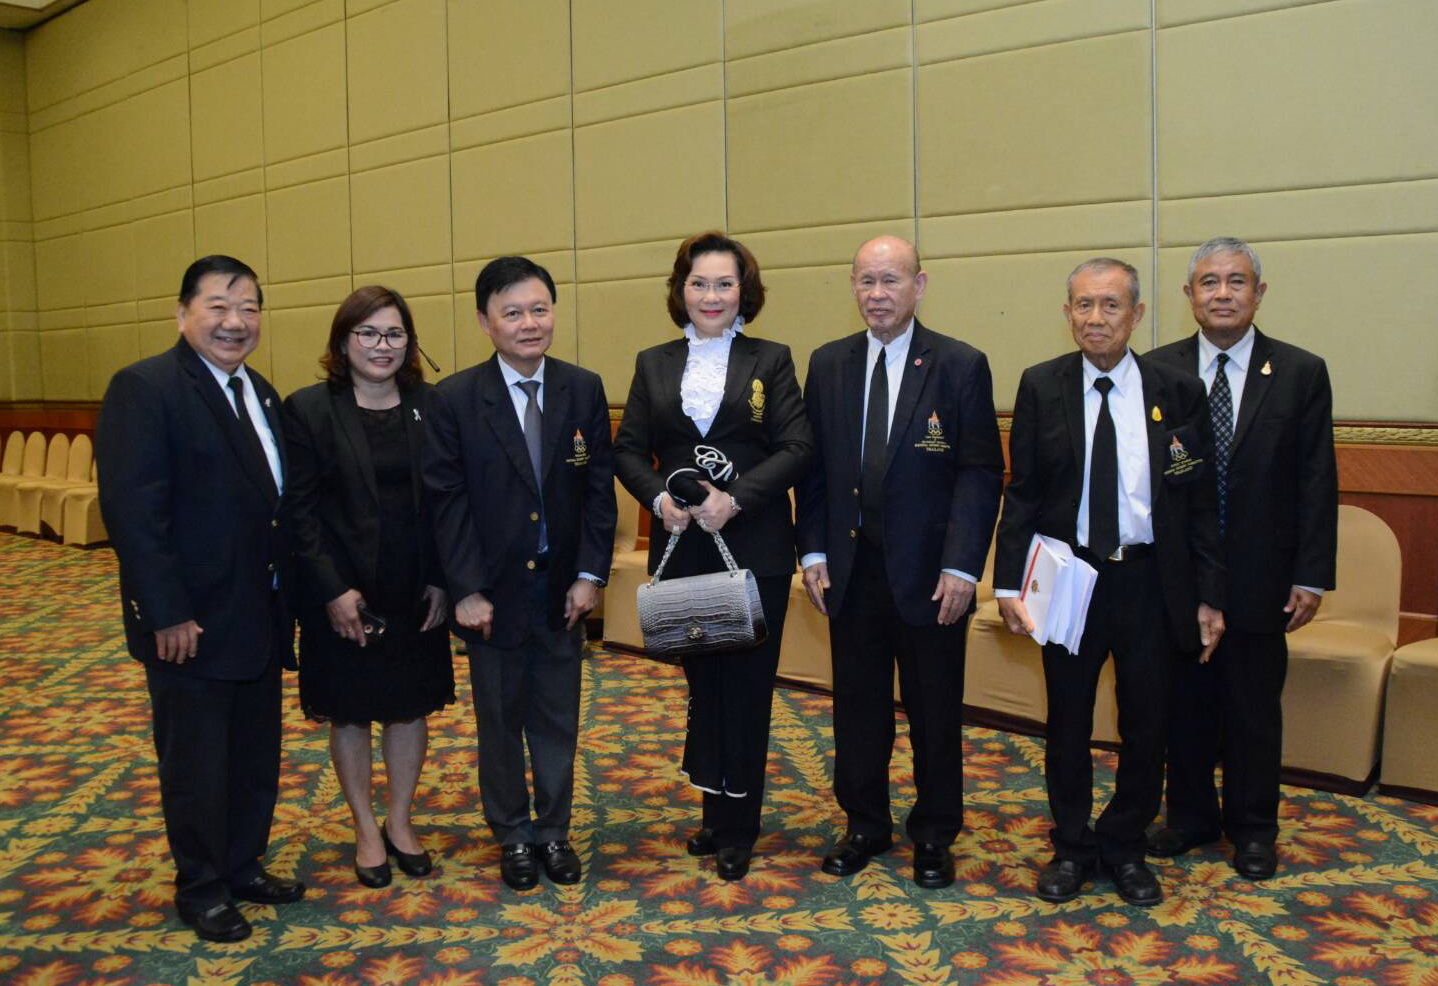                         คุณหญิงปัทมา ได้รับเลือกให้เป็นหนึ่งในคณะกรรมการบริหาร คณะกรรมการโอลิมปิคแห่งประเทศไทยฯ ประจำปี 2560 -2564